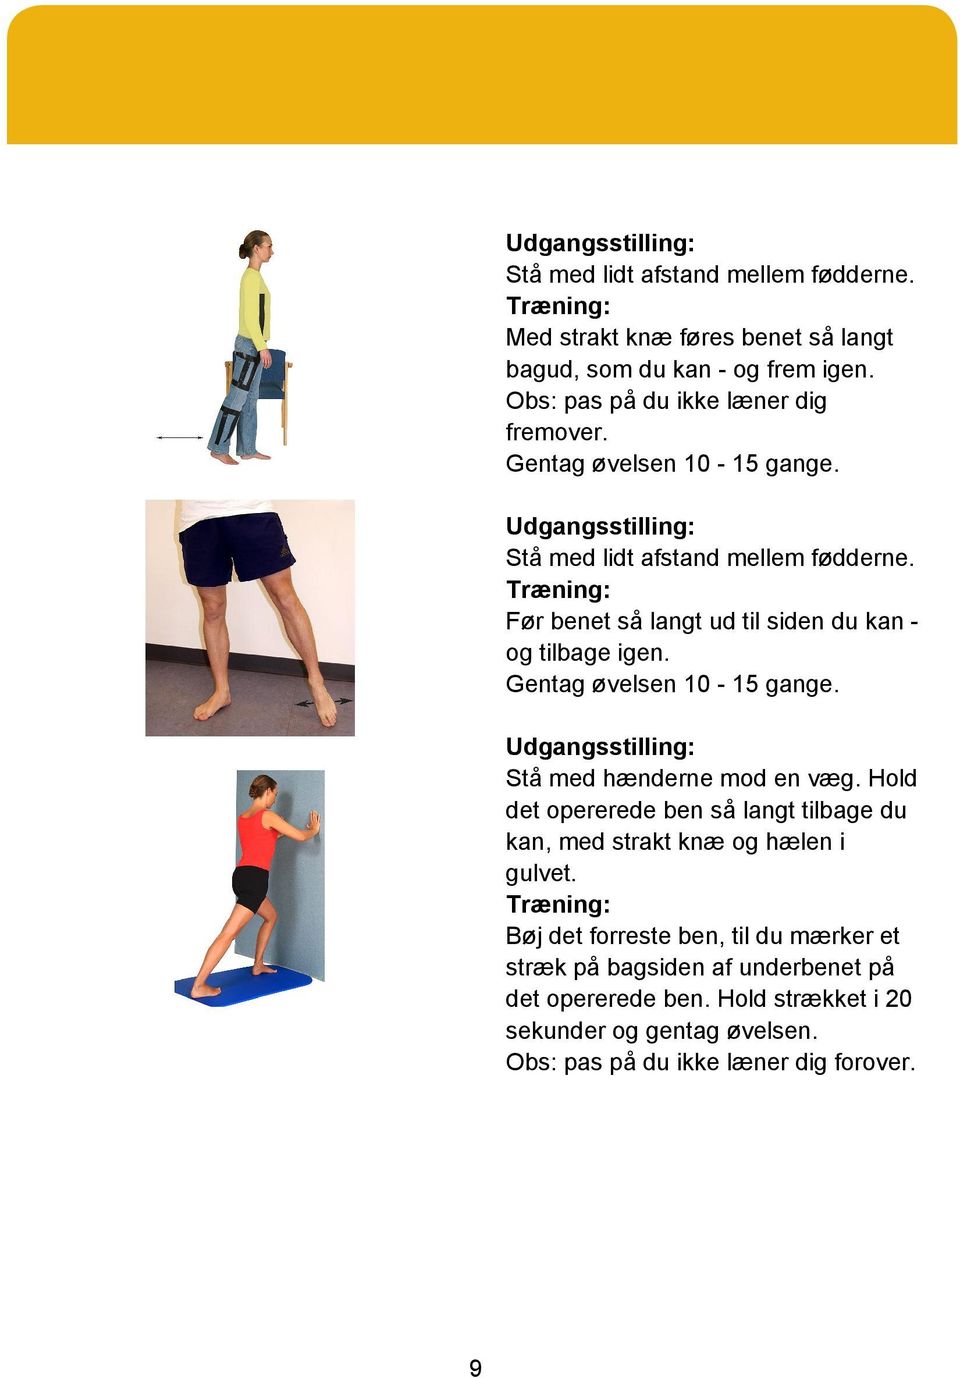 Gentag øvelsen 10-15 gange. Stå med hænderne mod en væg. Hold det opererede ben så langt tilbage du kan, med strakt knæ og hælen i gulvet.